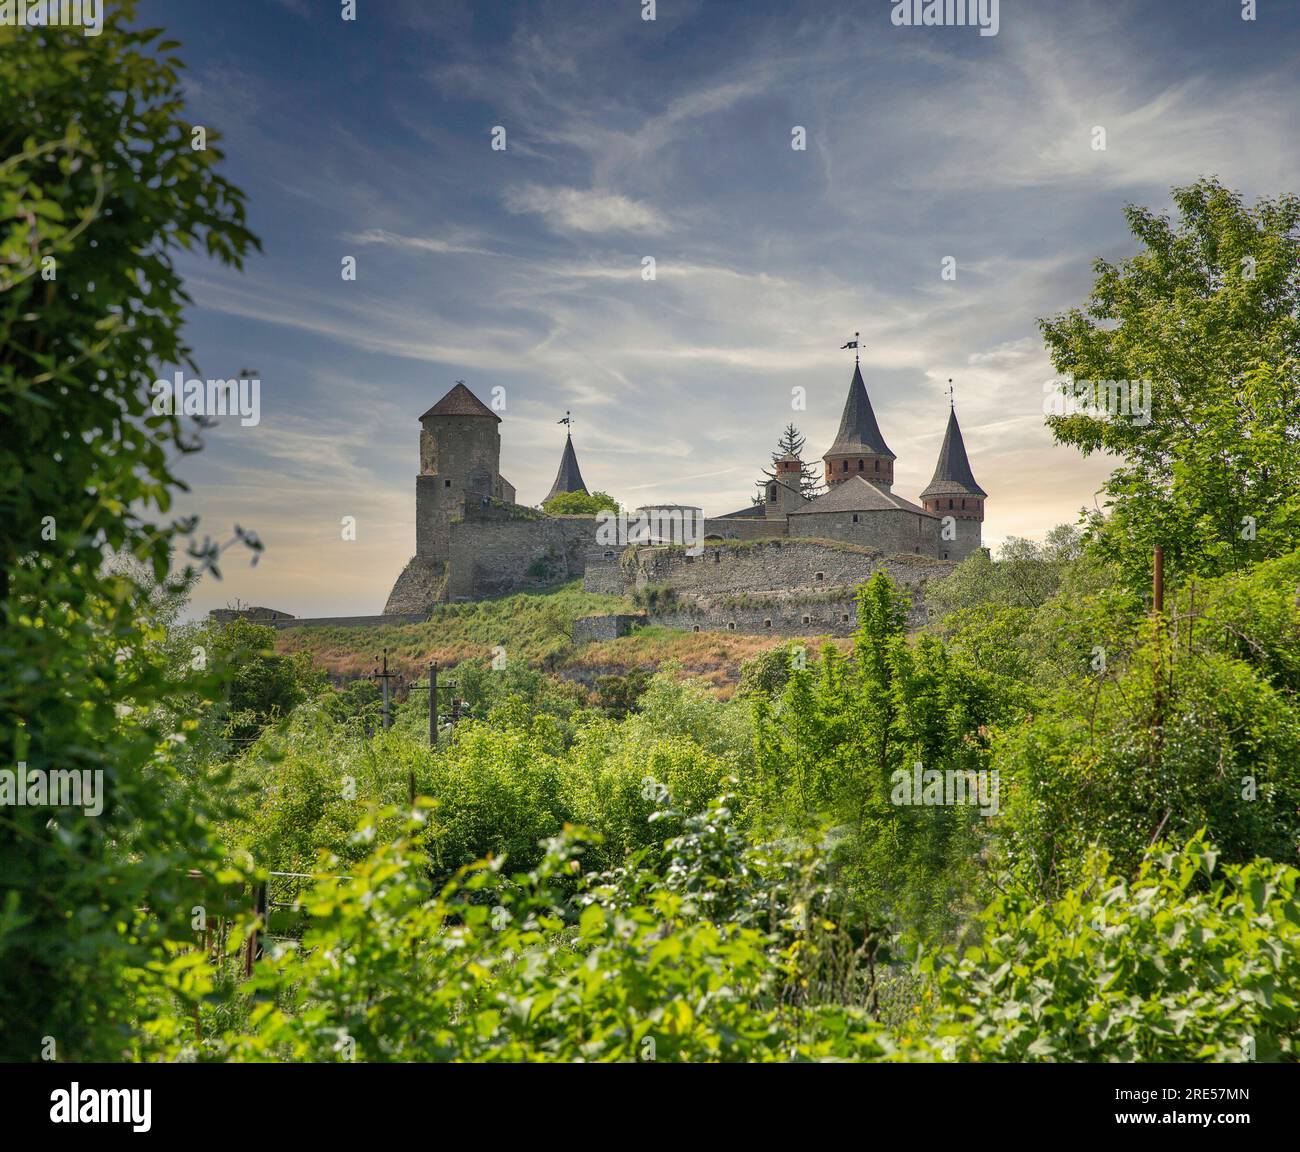 Château dans la partie historique de Kamianets-Podilskyi, Ukraine. C'est un ancien château ruthène-lituanien et plus tard une forteresse polonaise en trois parties. Banque D'Images